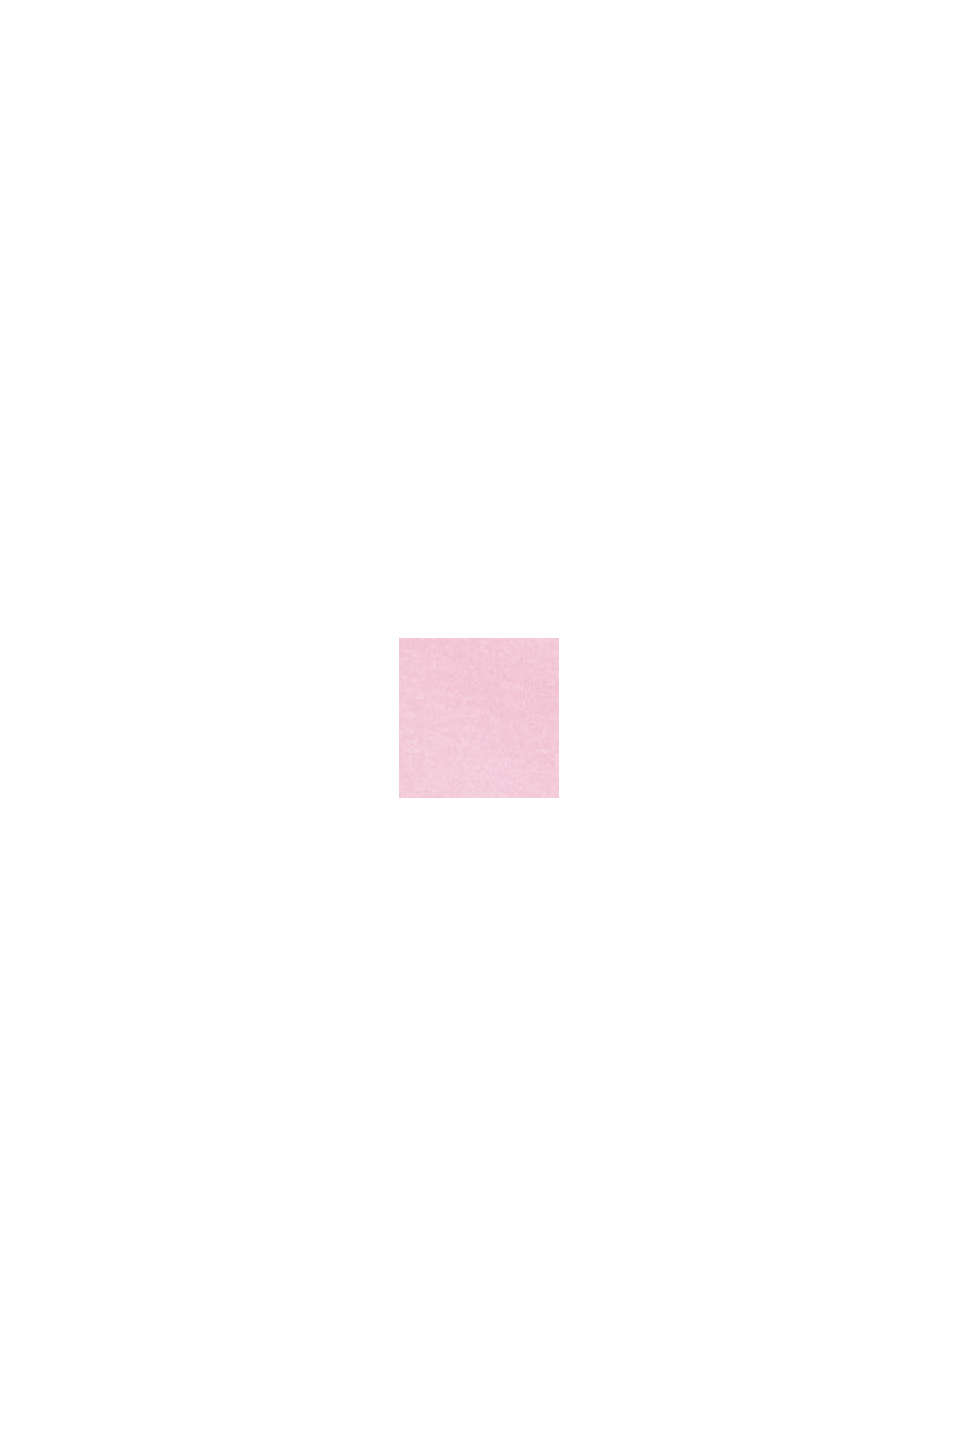 條紋橄欖球POLO衫, 粉紅色, swatch